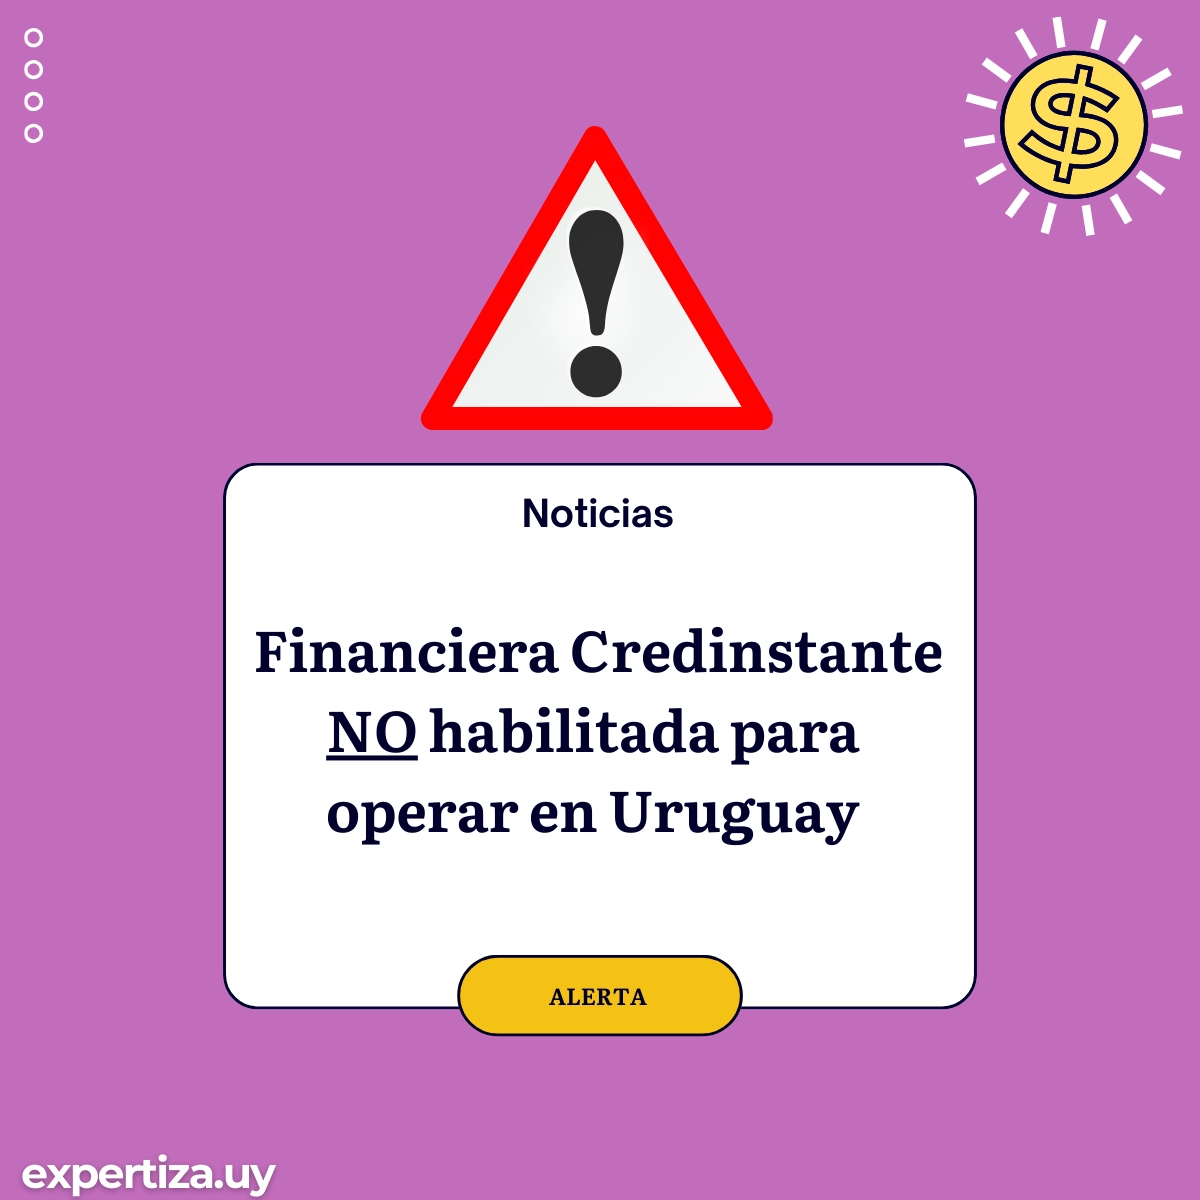 Financiera Credinstante no habilitada para operar en Uruguay.